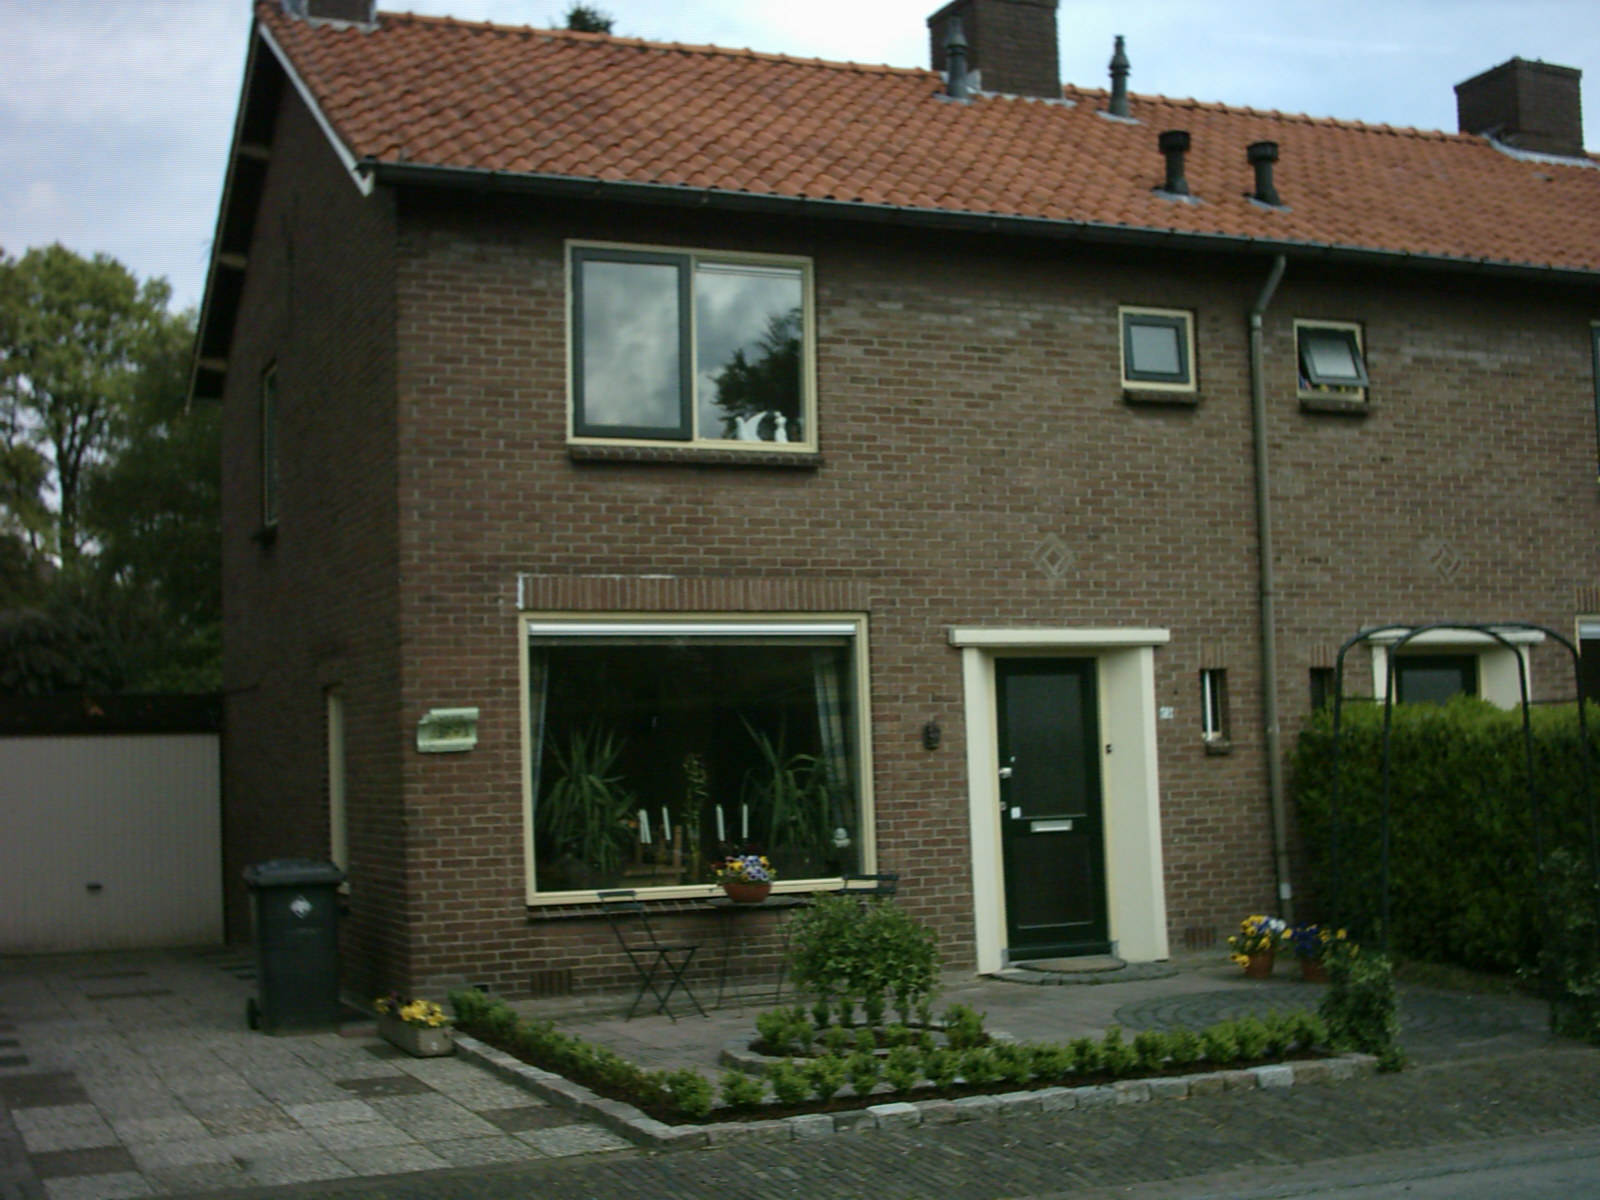 Meidoornstraat 23, 7213 WP Gorssel, Nederland